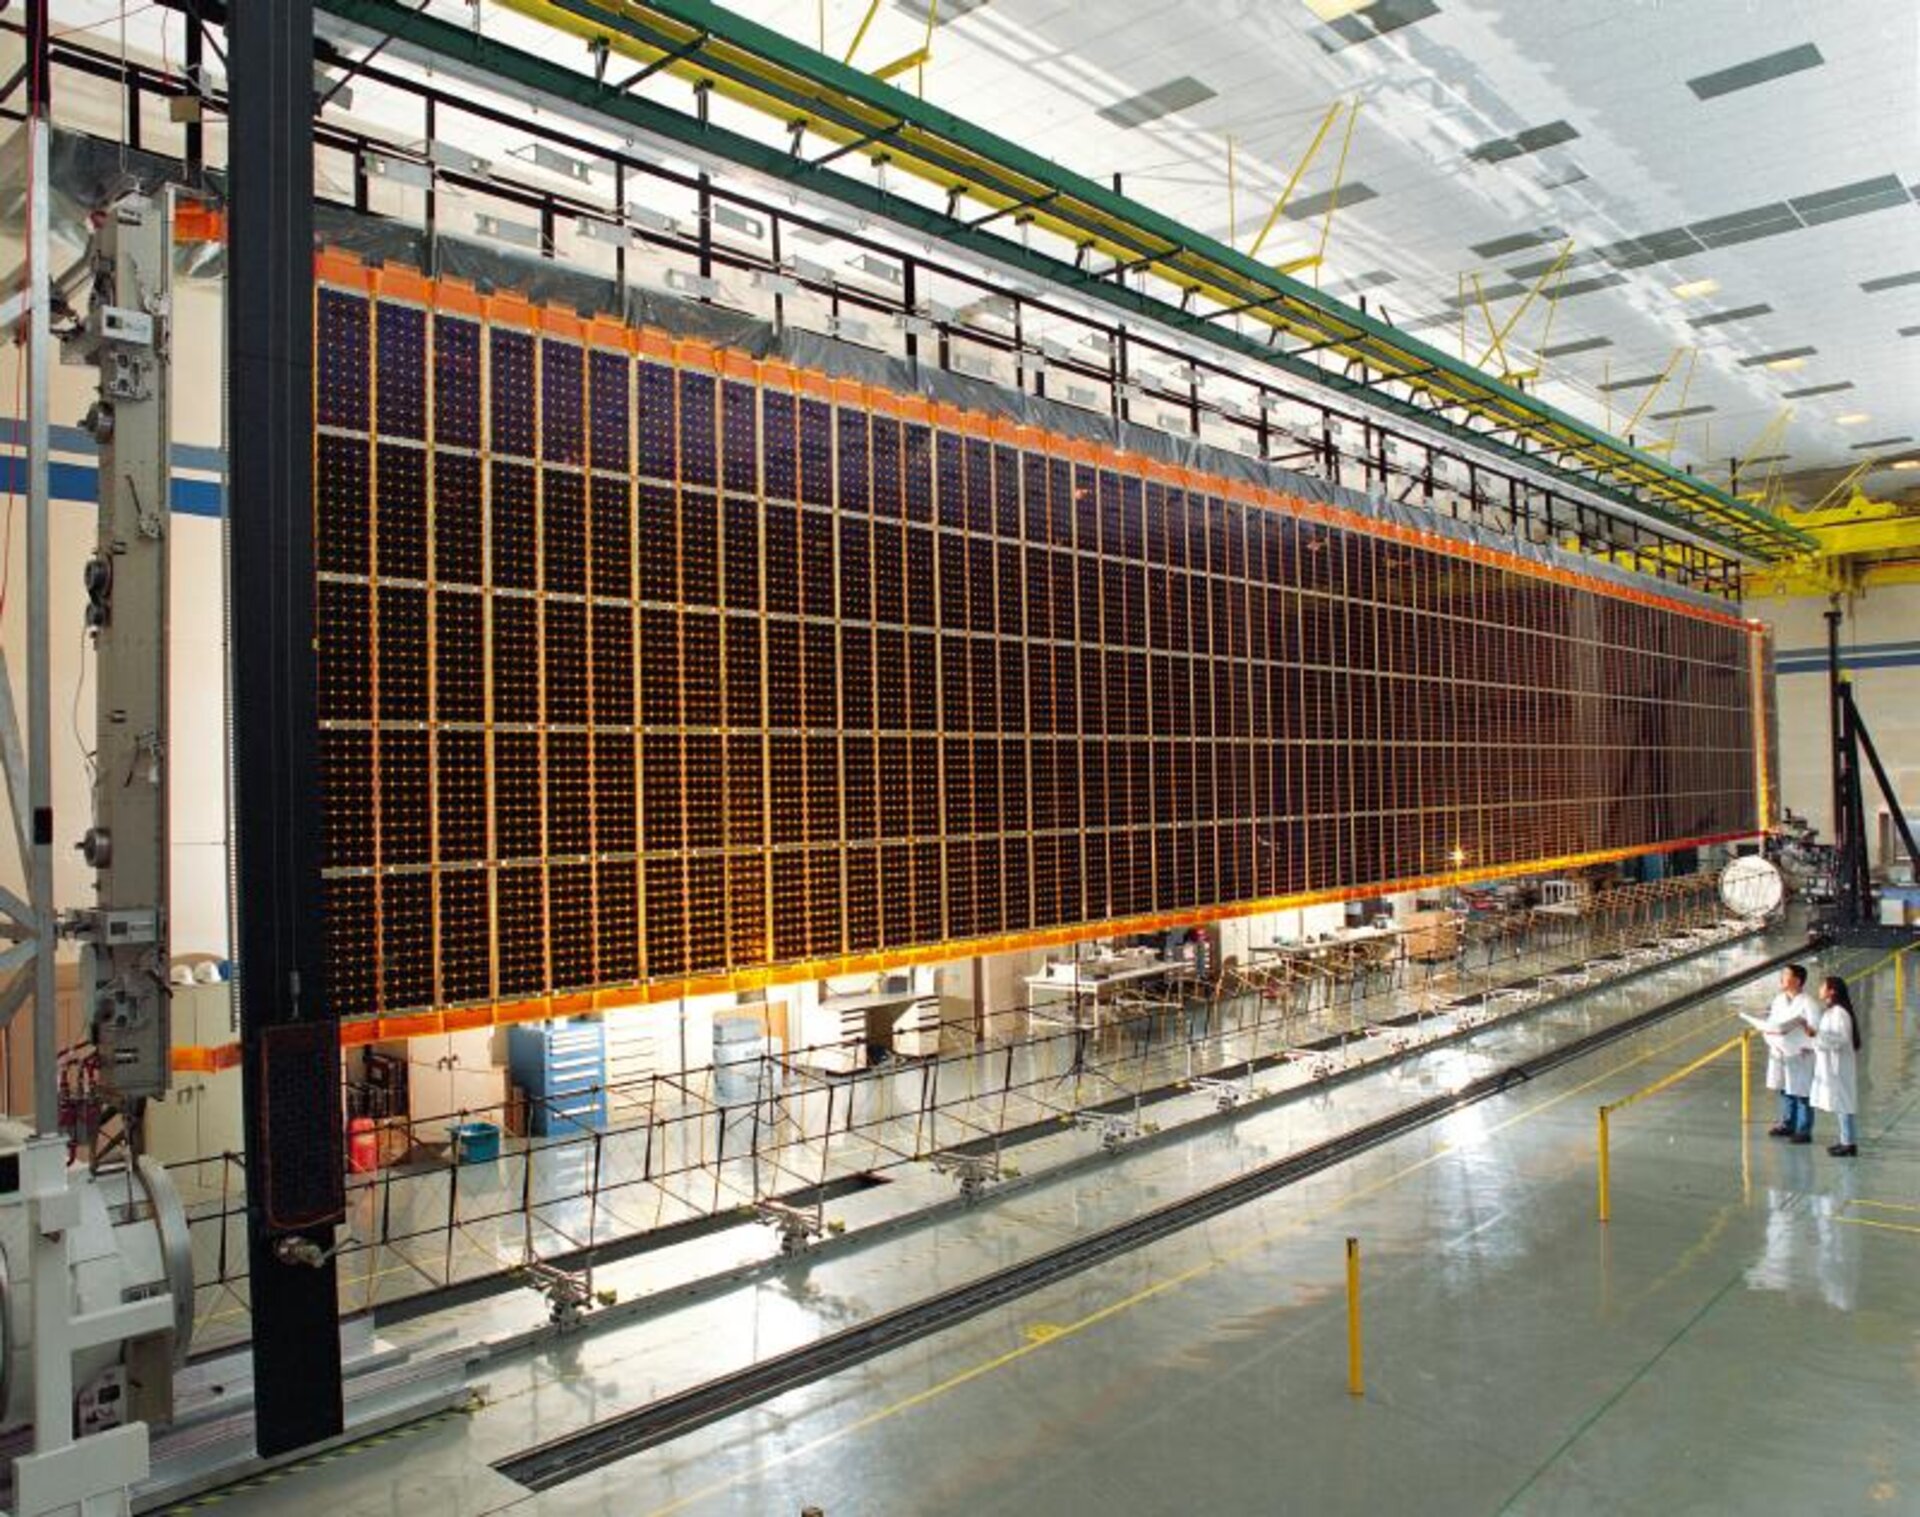 Space Station solar arrays